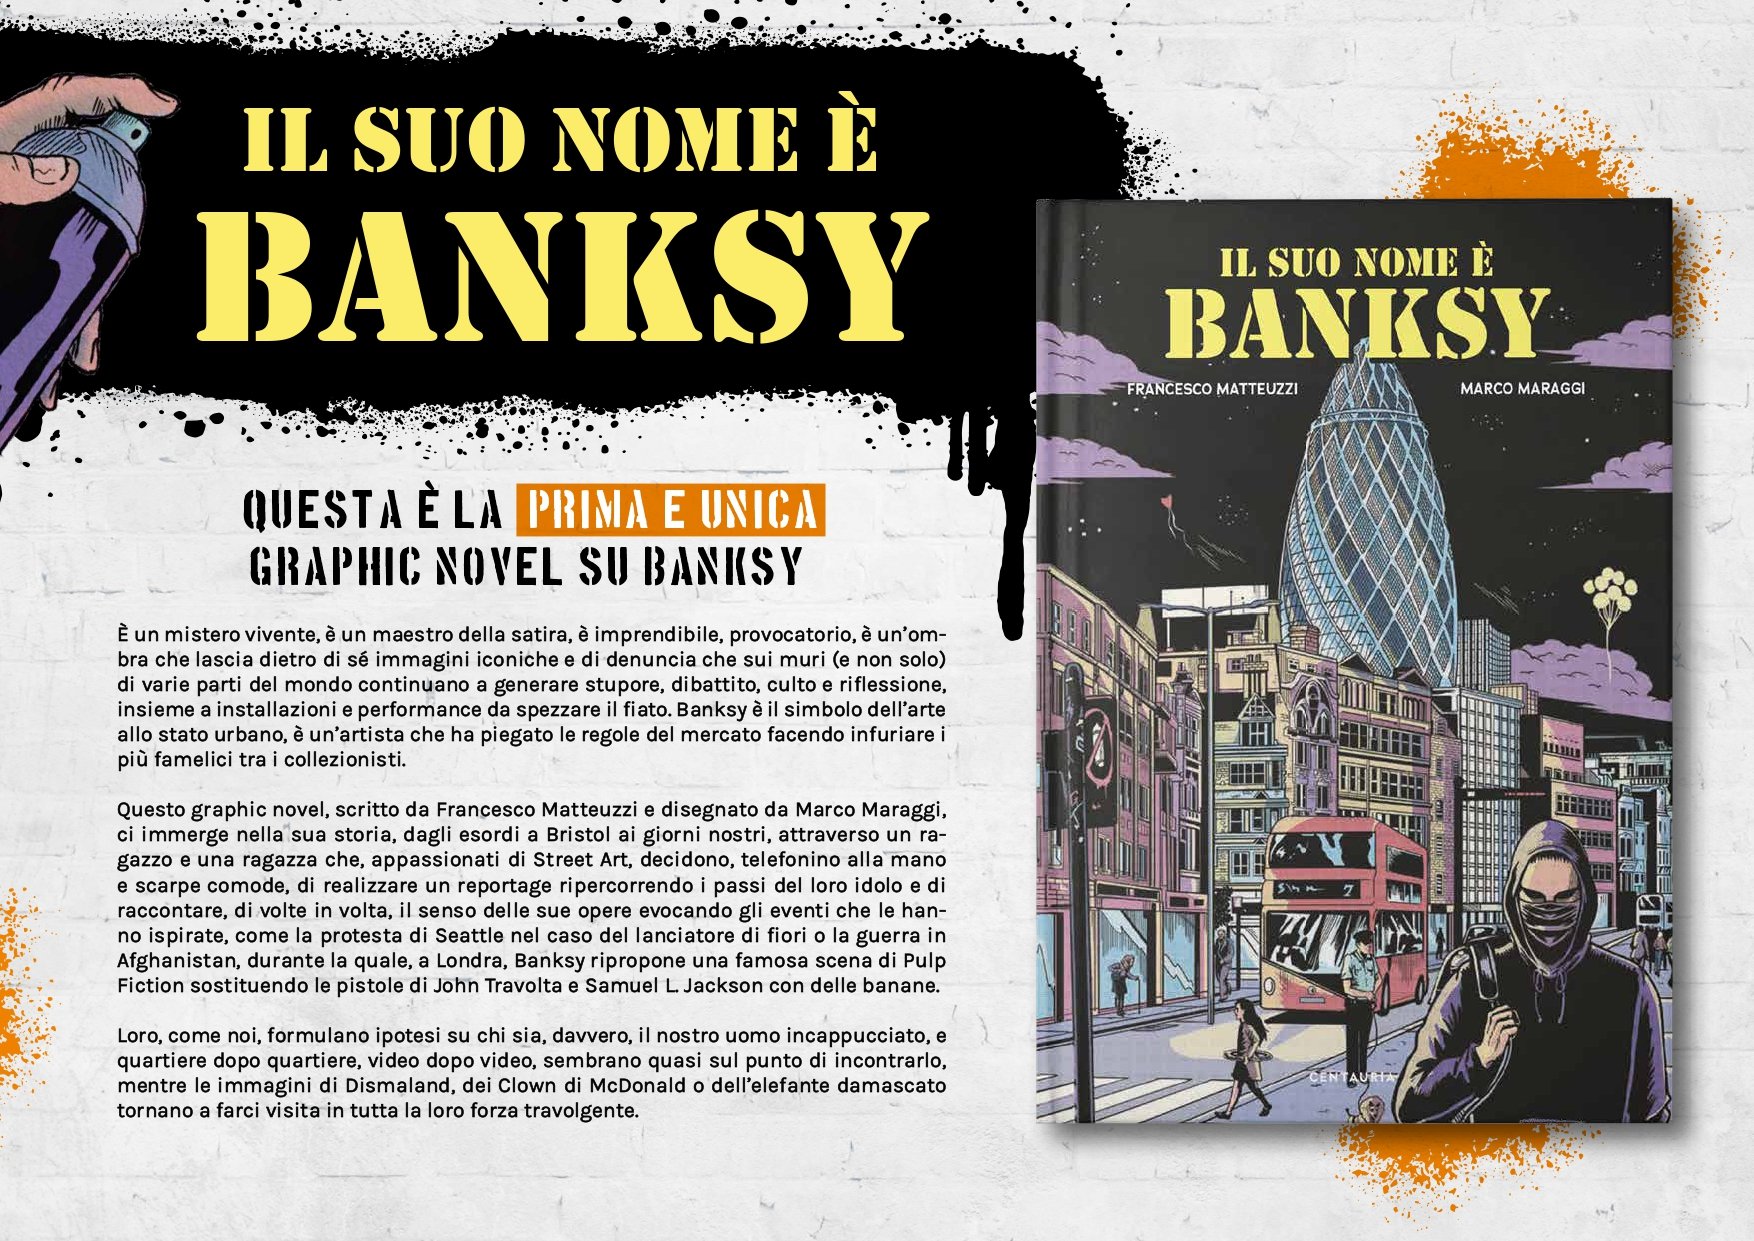 Il Suo Nome è Banksy: arriva la graphic novel ispirata al famoso artista 